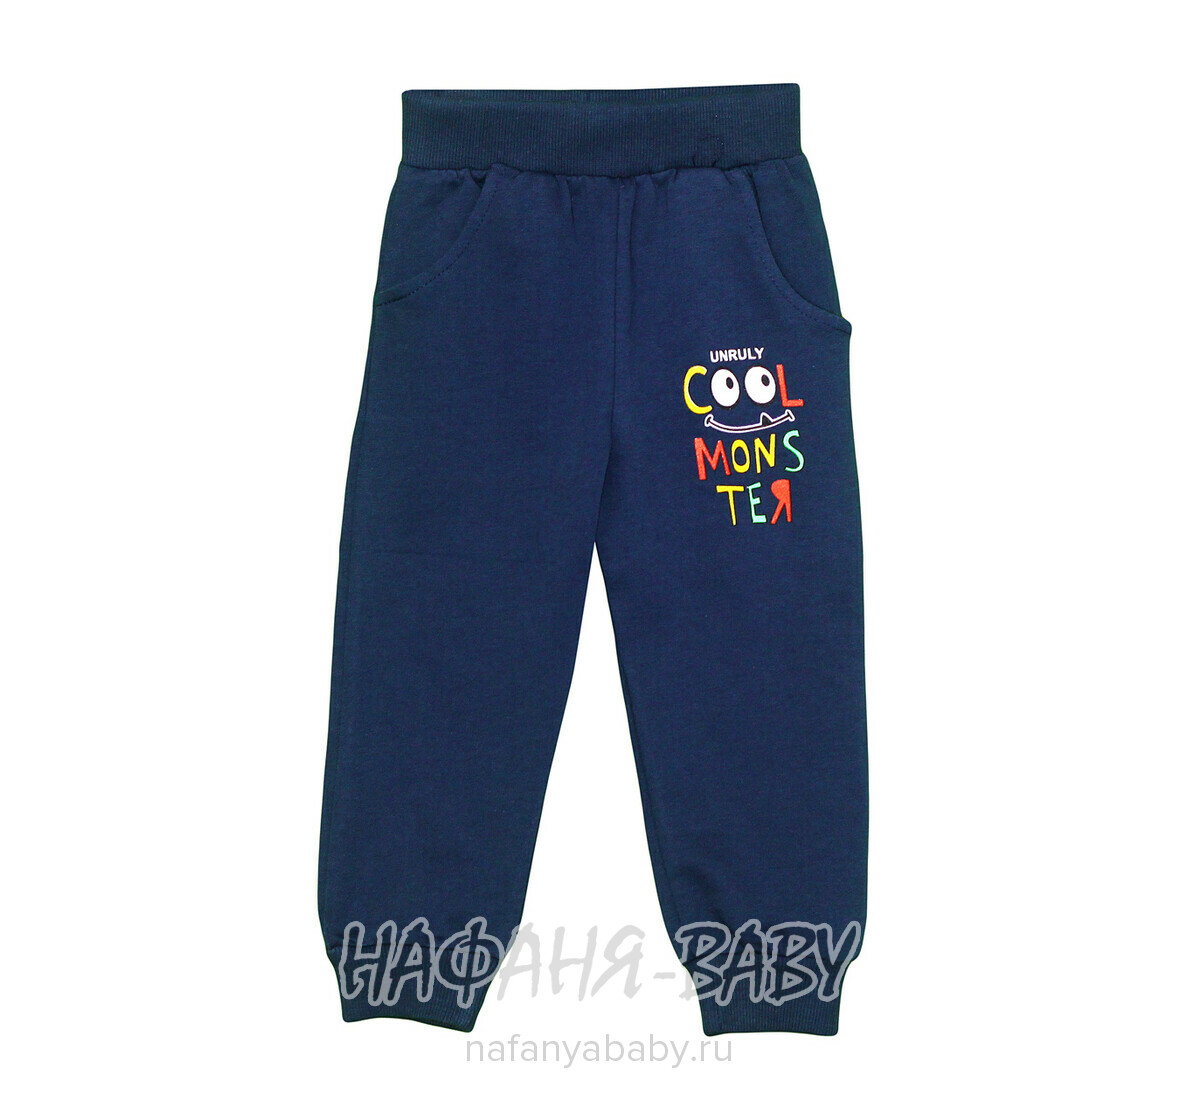 Детские трикотажные брюки UNRULY арт: 5768, 1-4 года, 5-9 лет, цвет темно-синий, оптом Турция